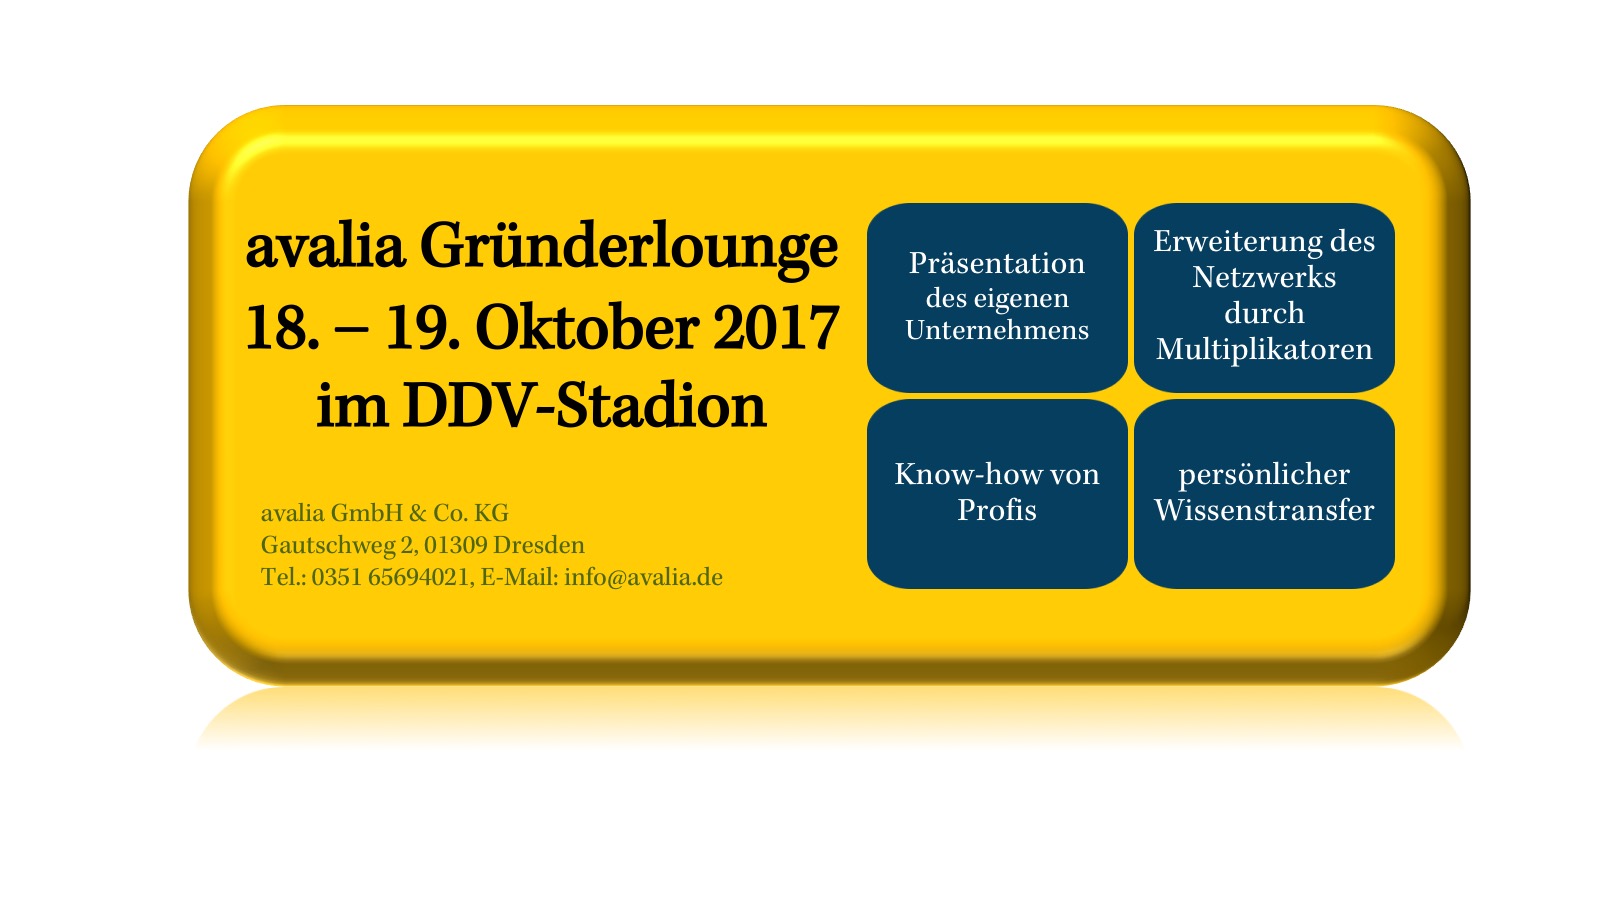 avalia Gründerlounge am 18. und 19. Oktober 2017